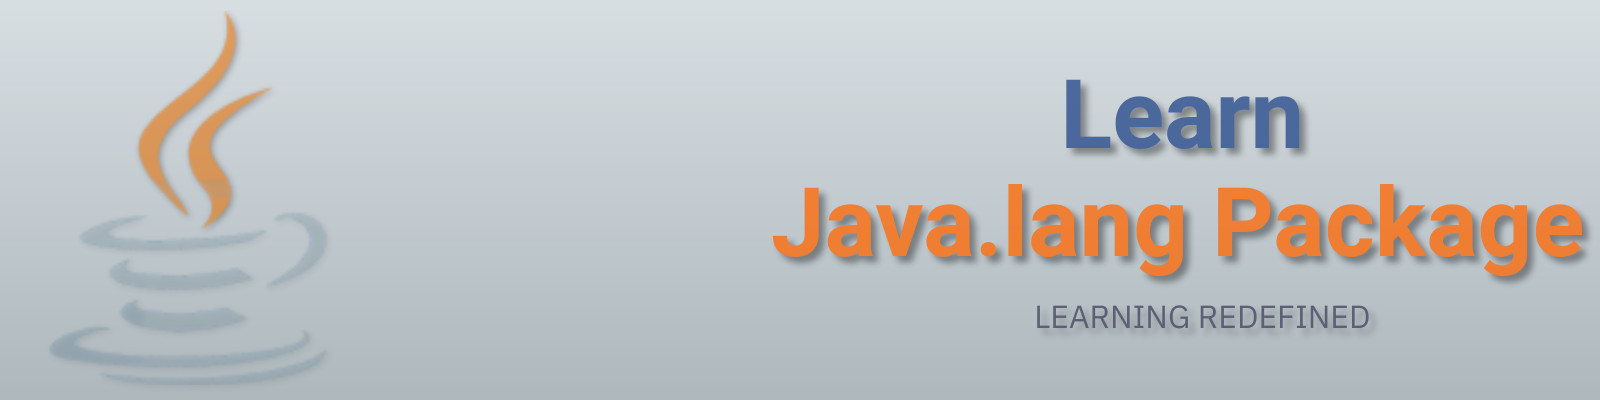 Java tutorial - Learn Java